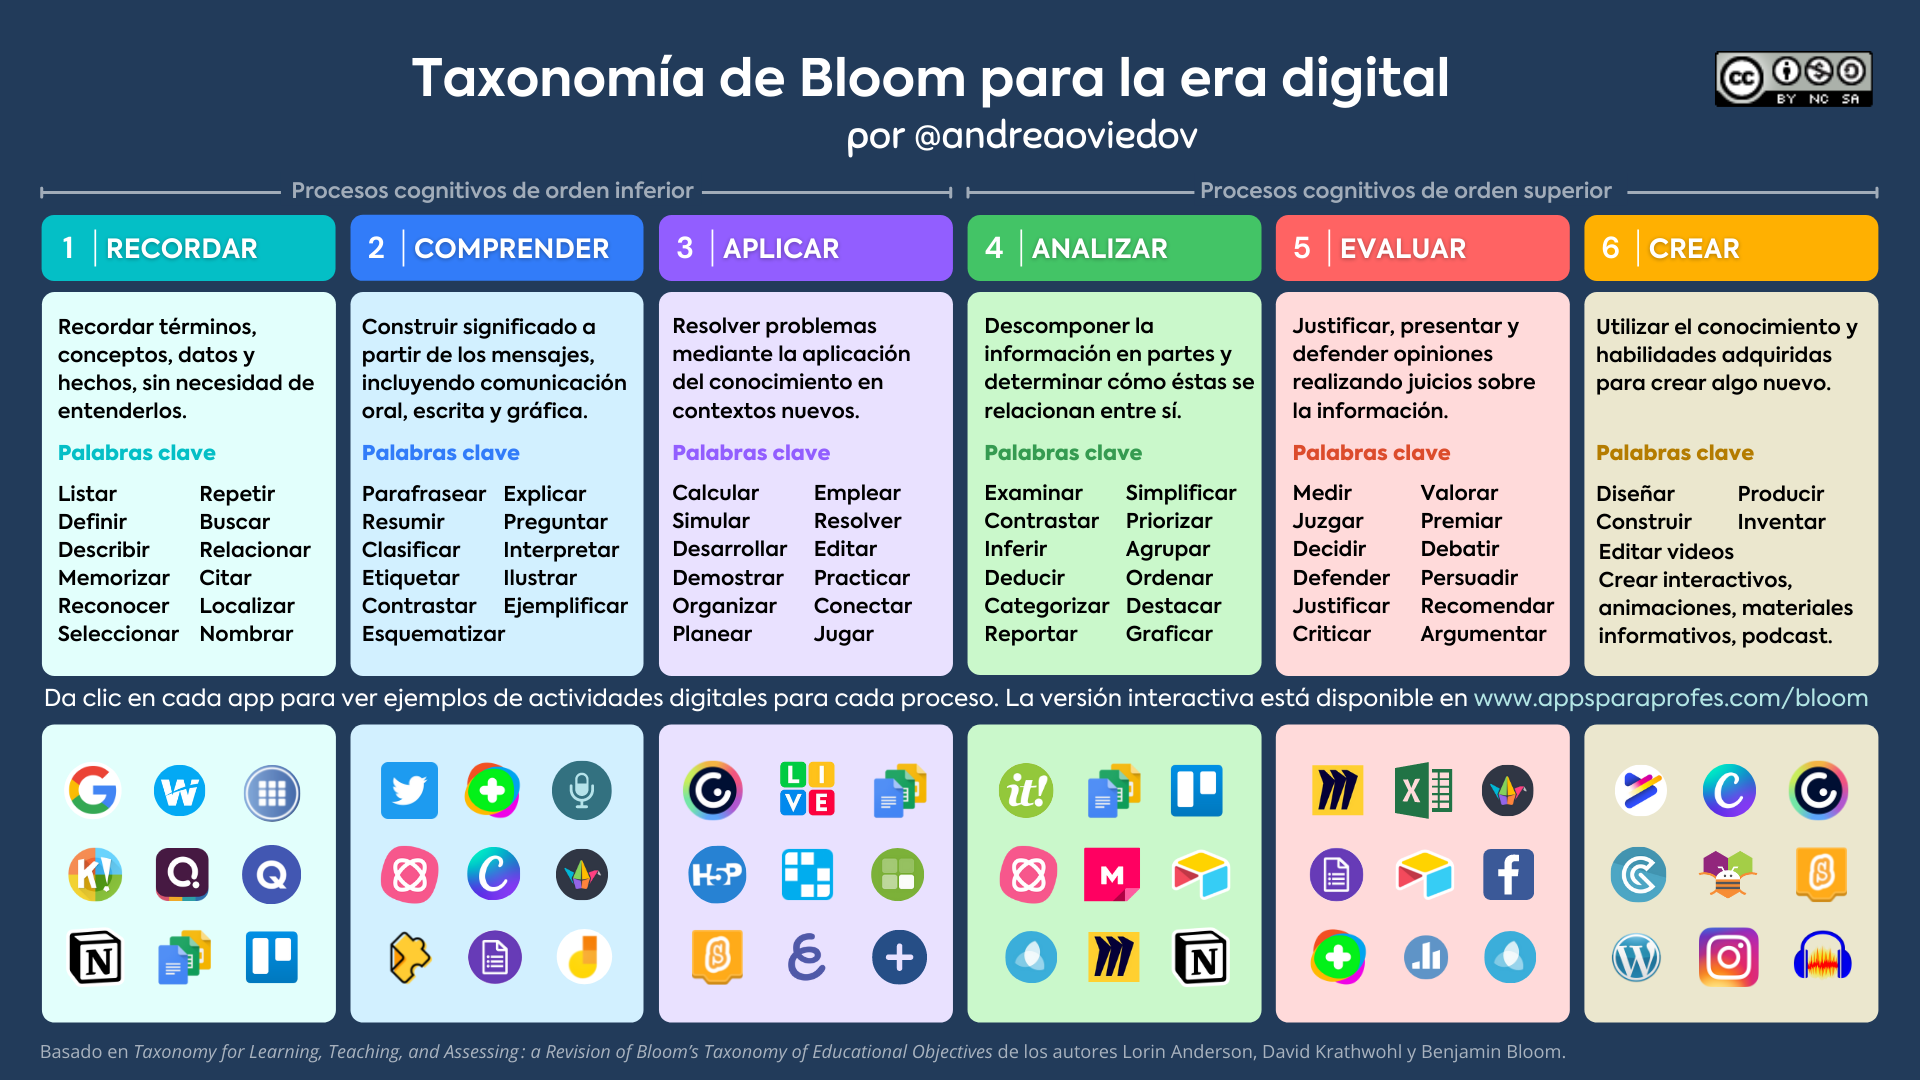 Eduteka Taxonomia De Bloom Para La Era Digital Taxonomia De Bloom Images My Xxx Hot Girl